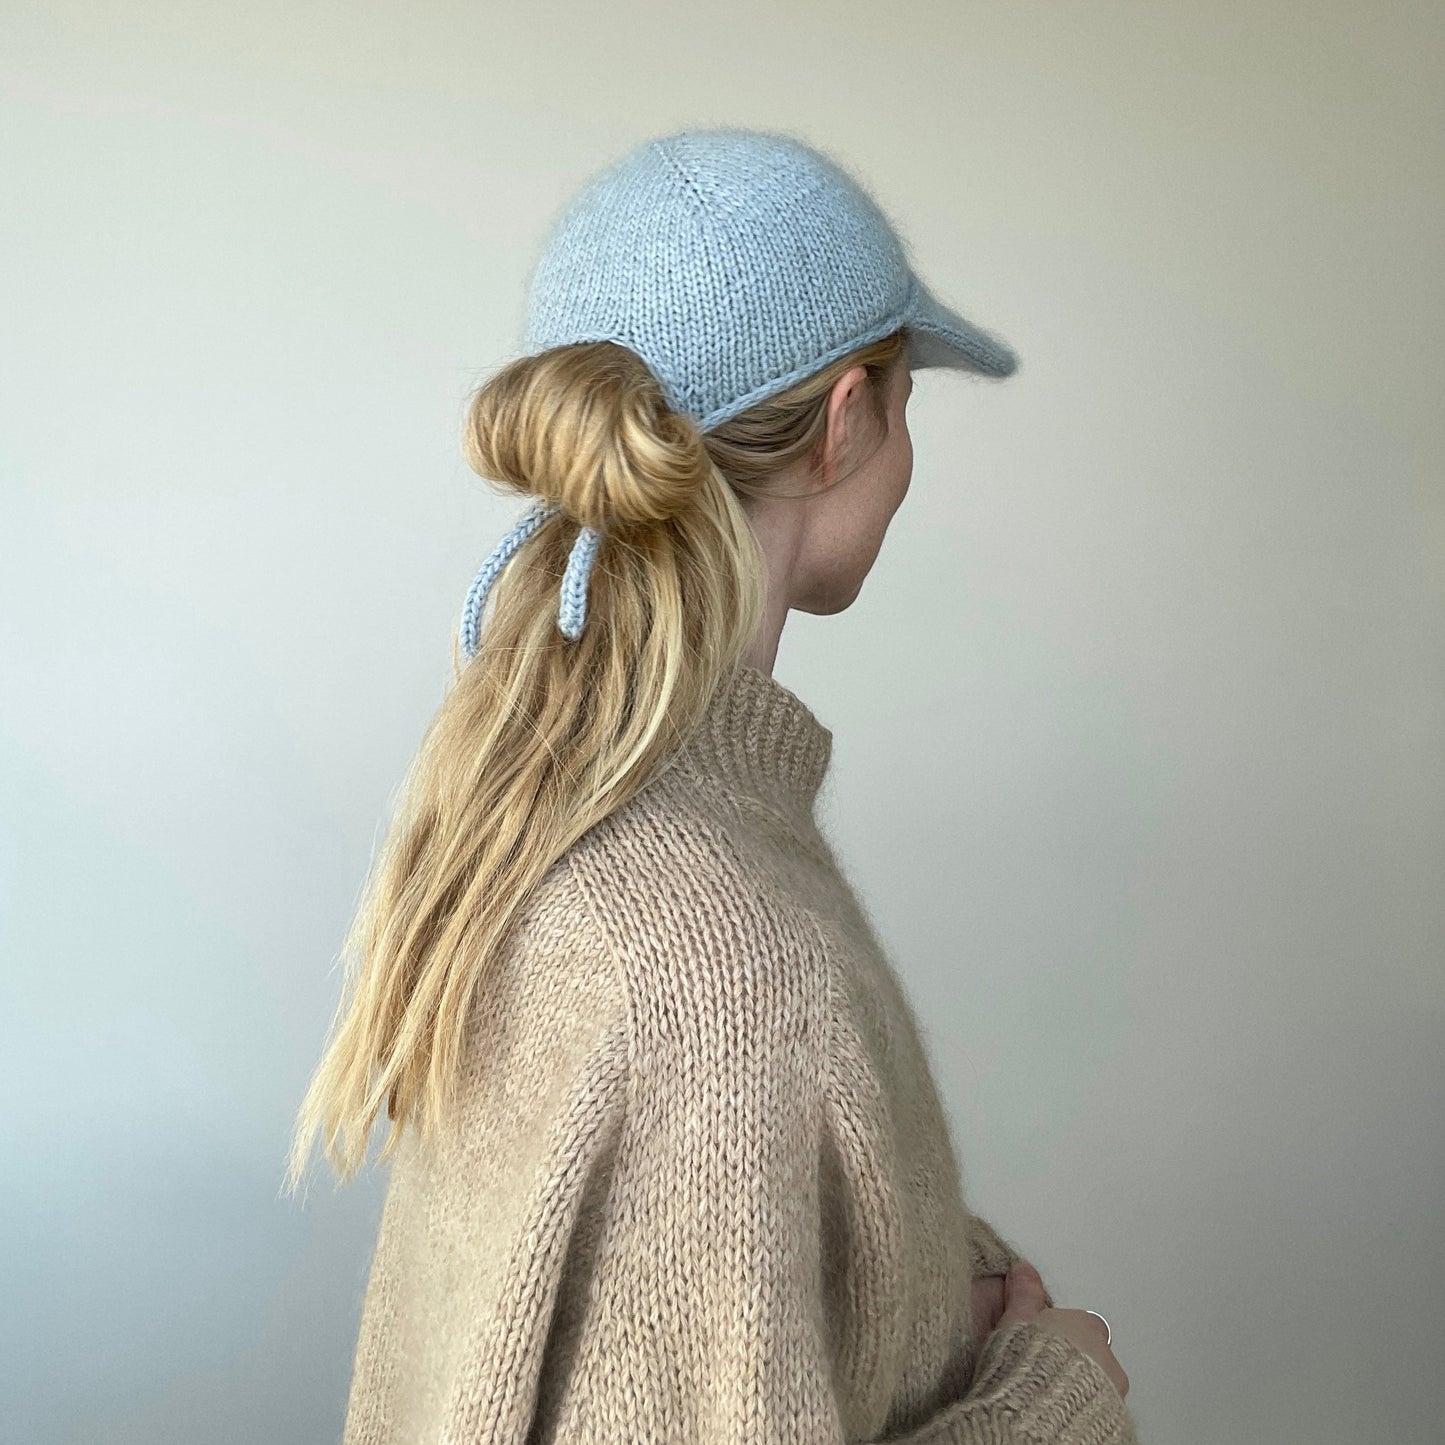 Pastel Winter cap knitting pattern by pastelkollektivet